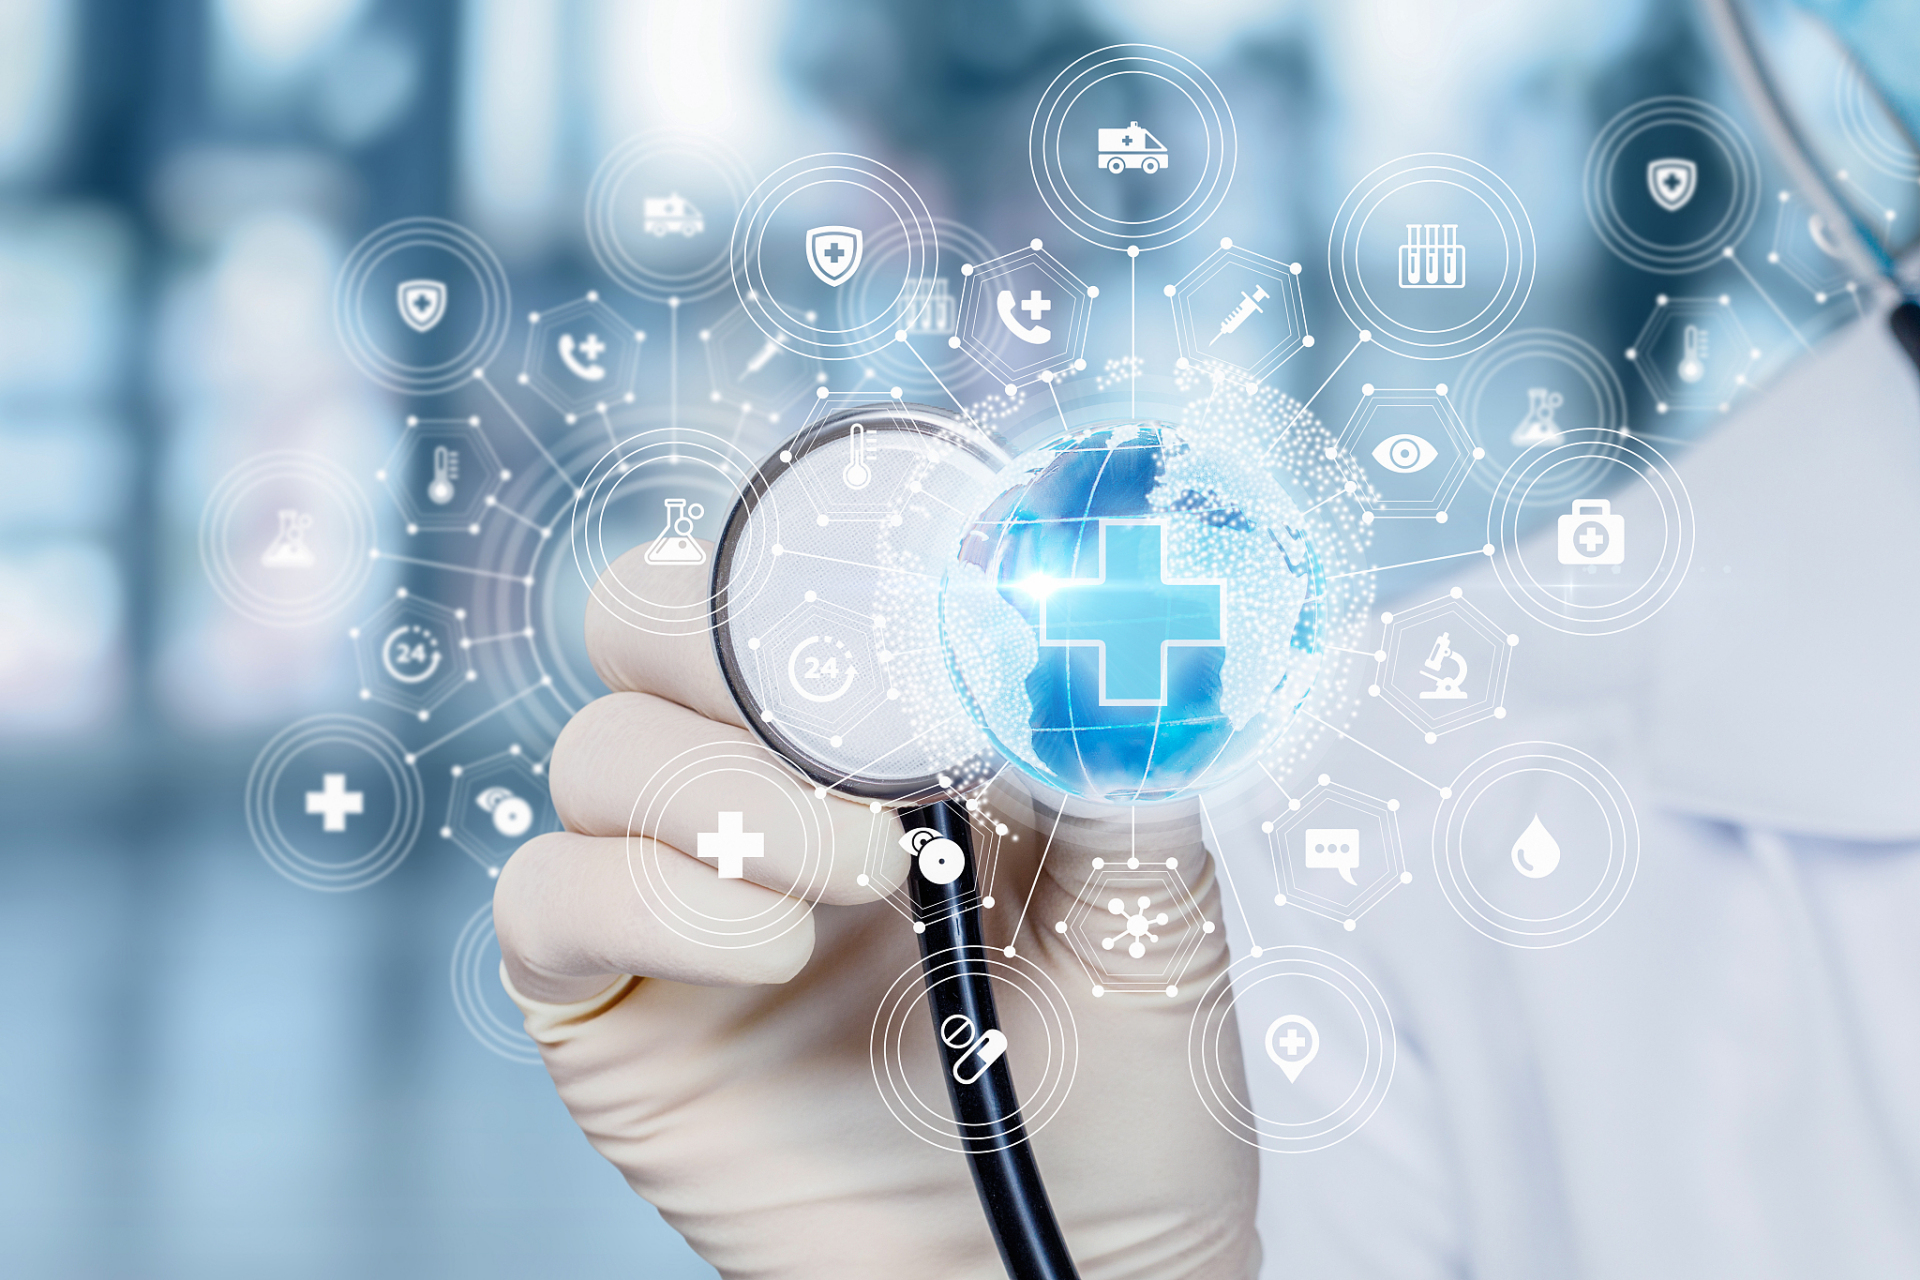 《人工智能与医疗健康——中国ai医疗的创新发展》  引言:  随着科技